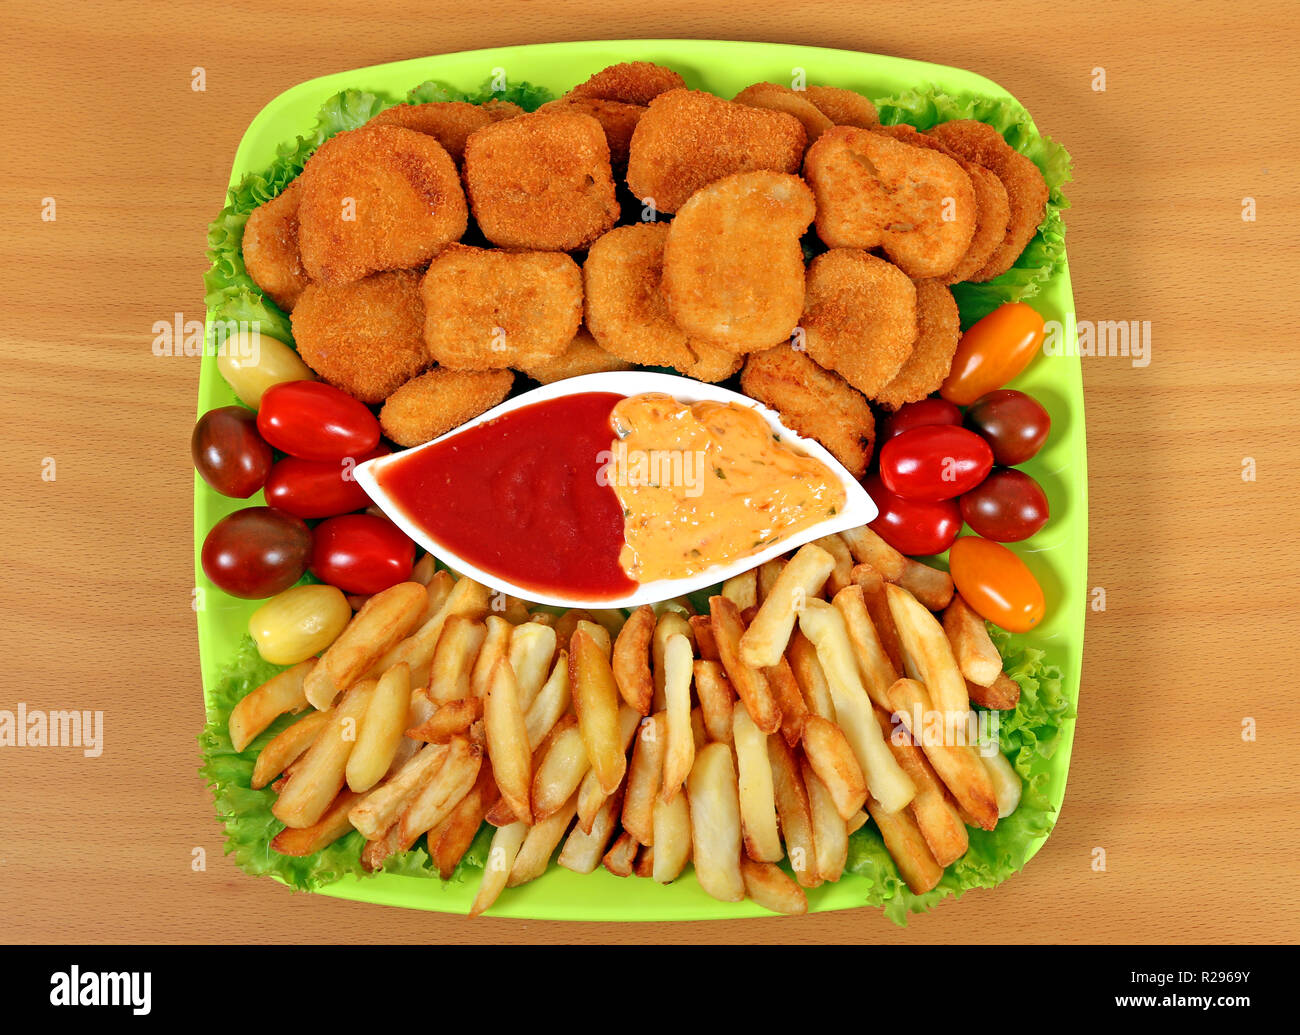 Nuggets de poulet et frites fast food Banque D'Images